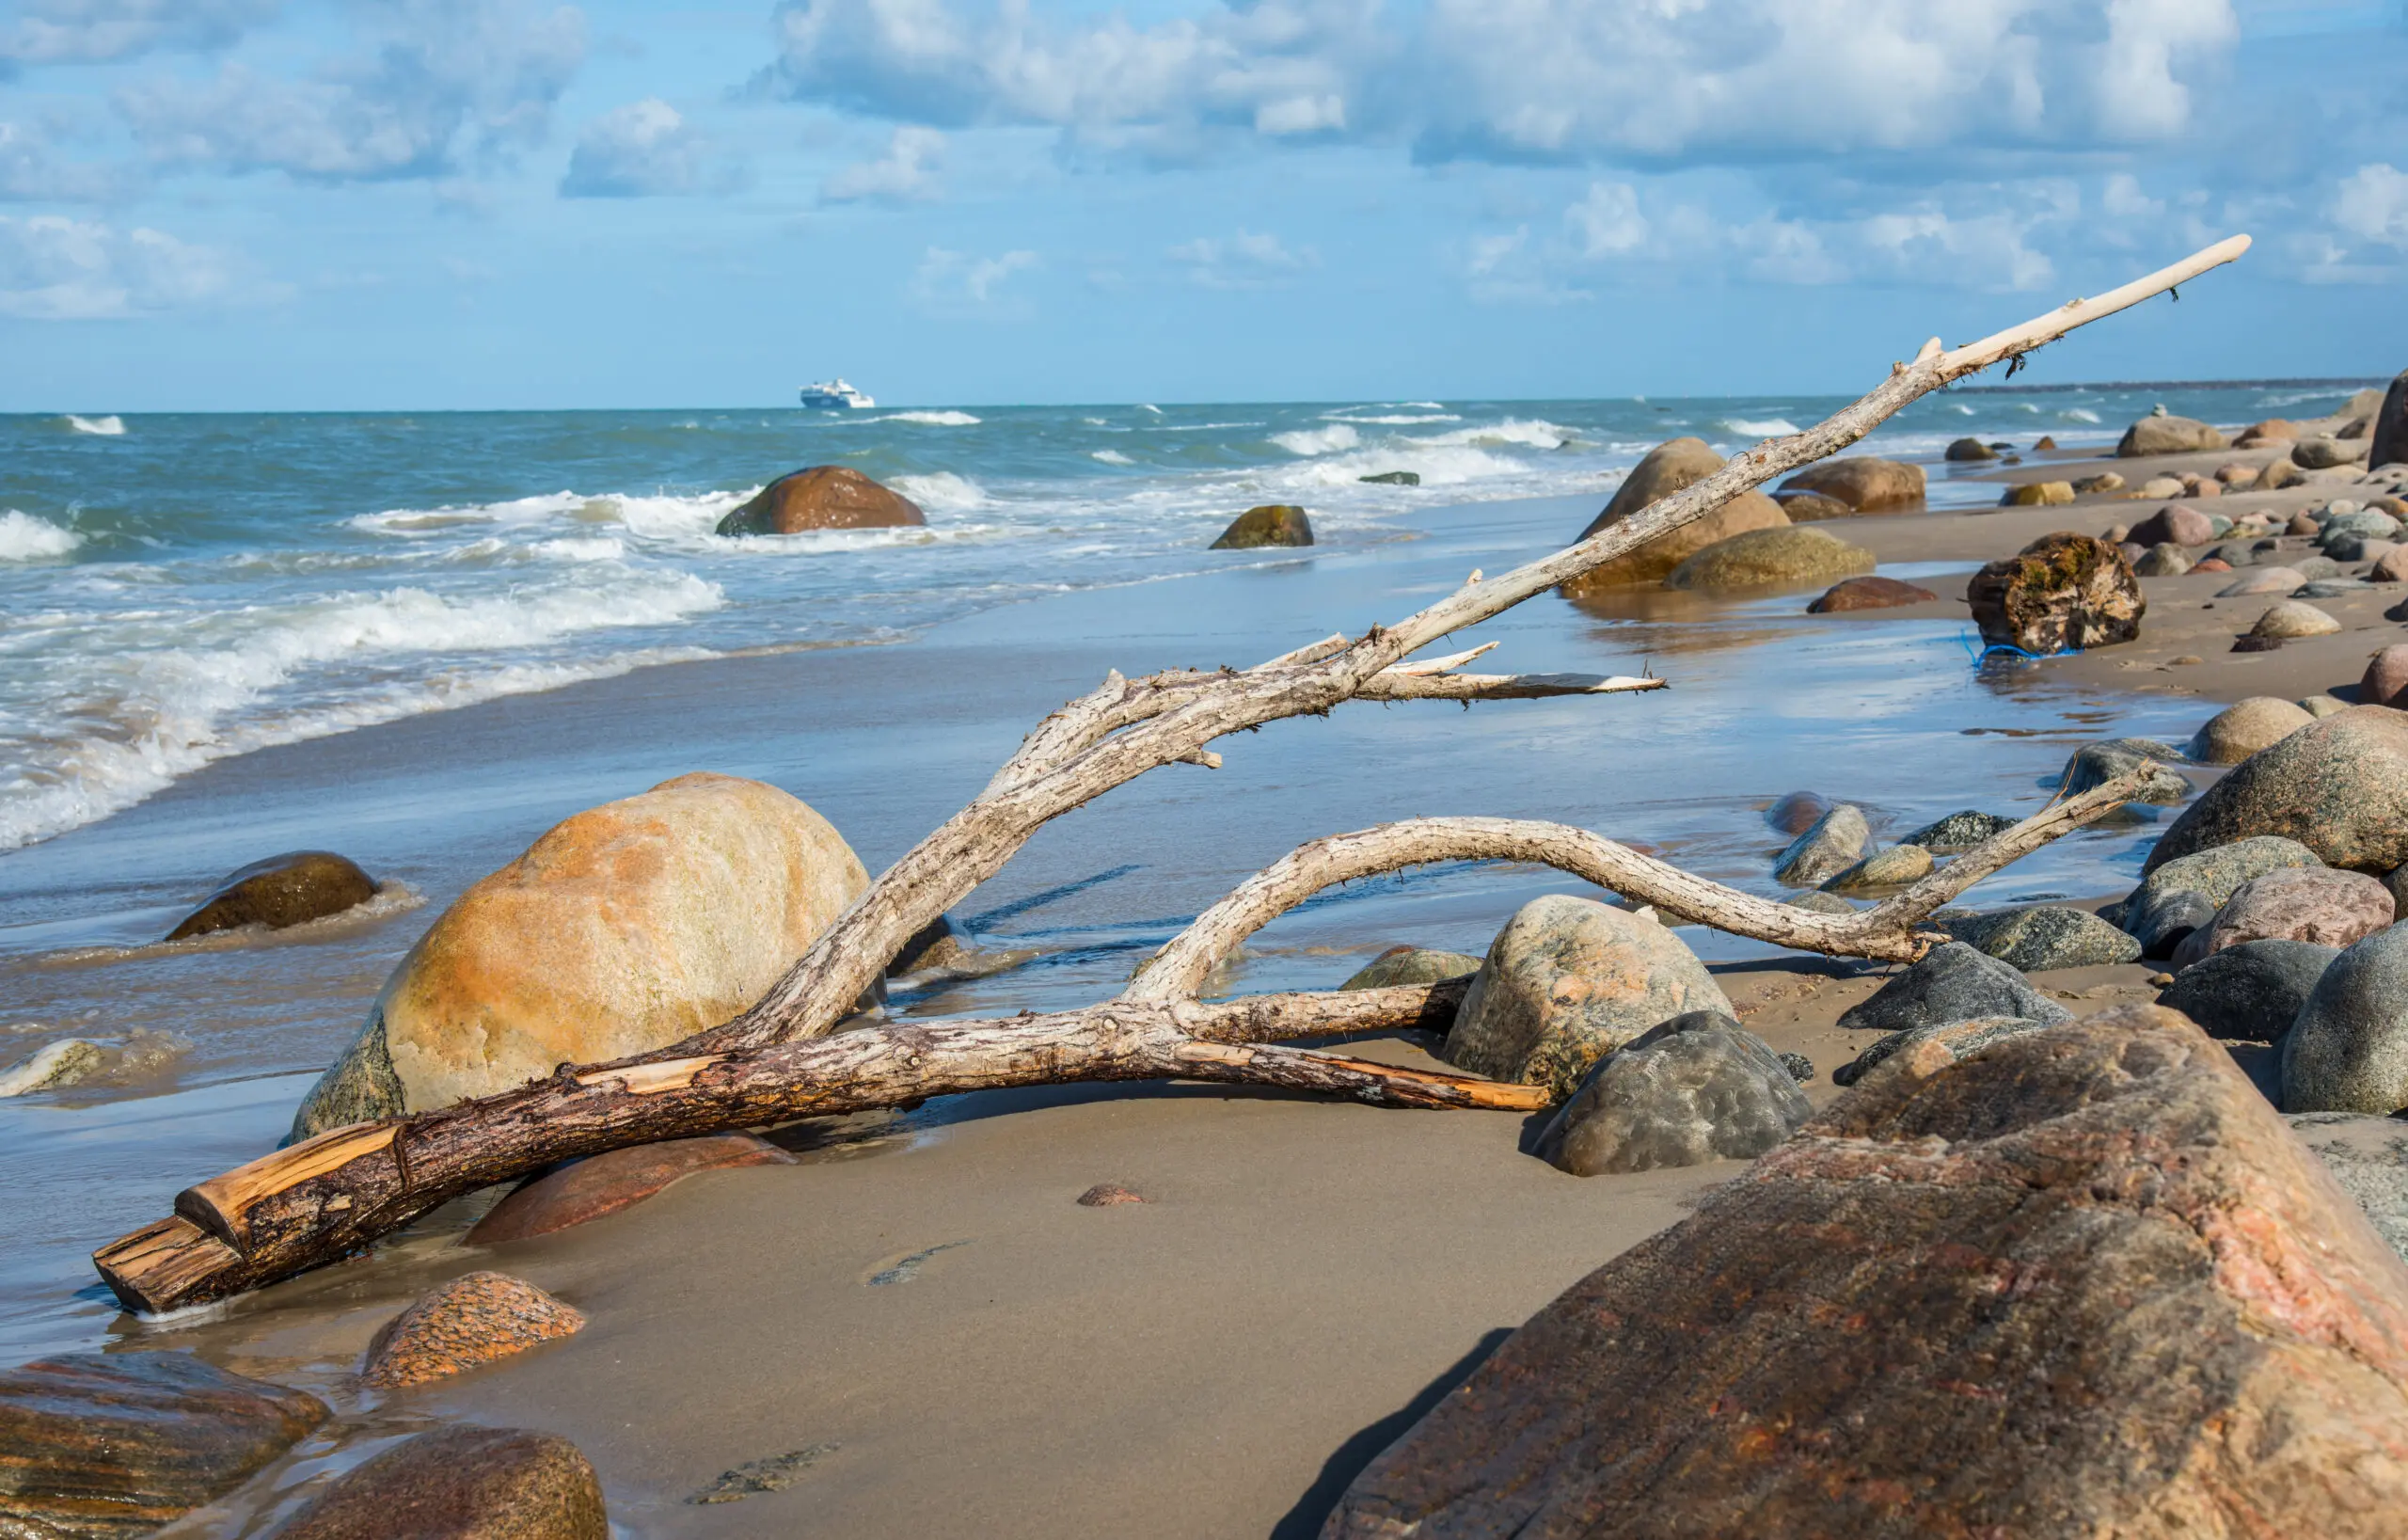 Wandbild (4330) Strand präsentiert: Landschaften,Gewässer